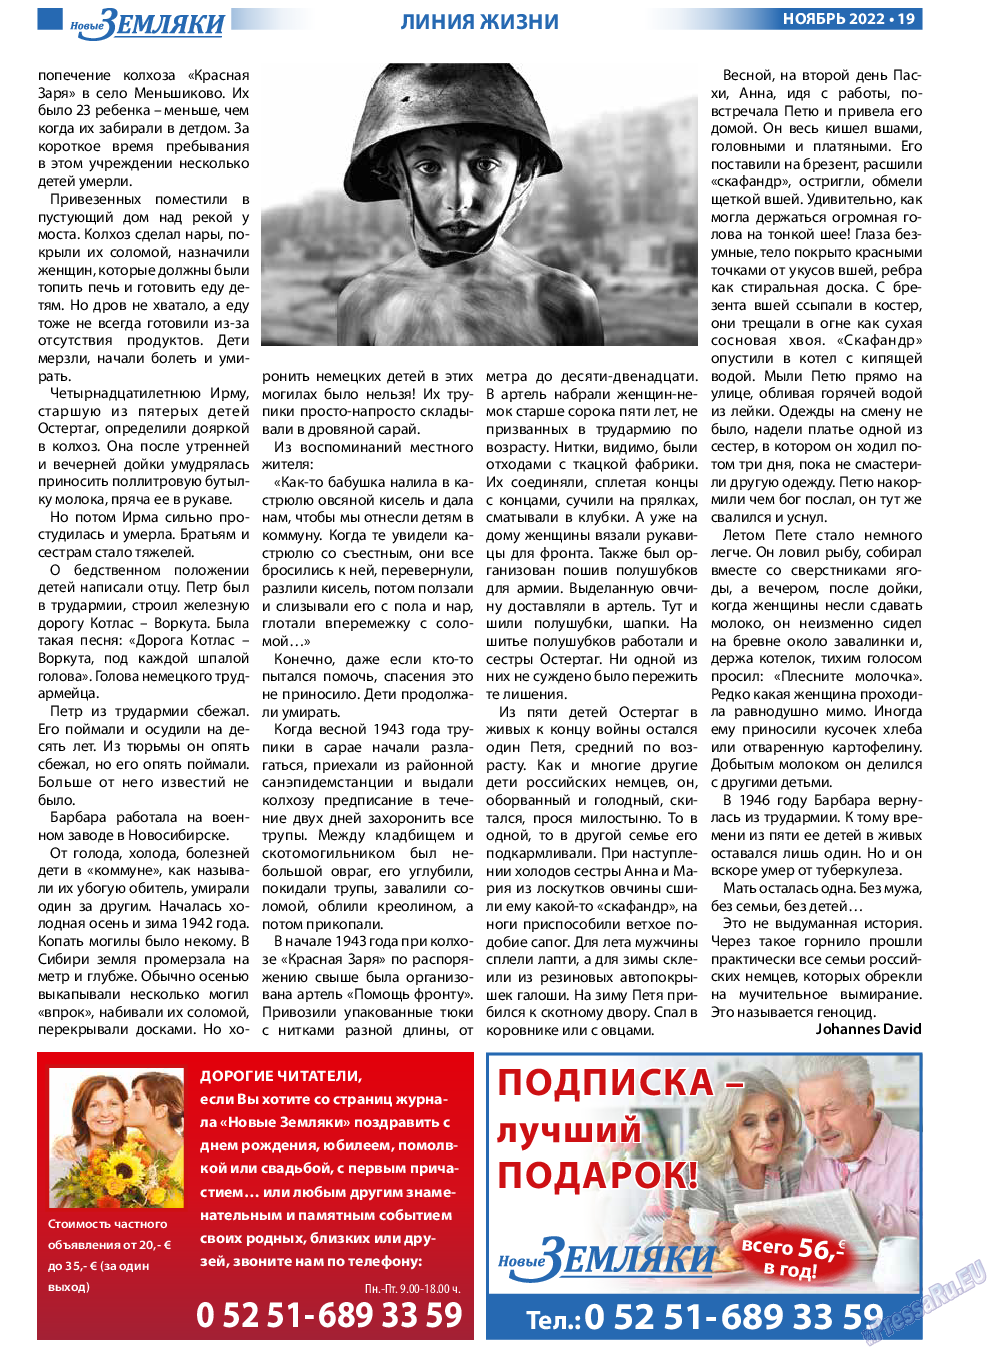 Новые Земляки, газета. 2022 №11 стр.19